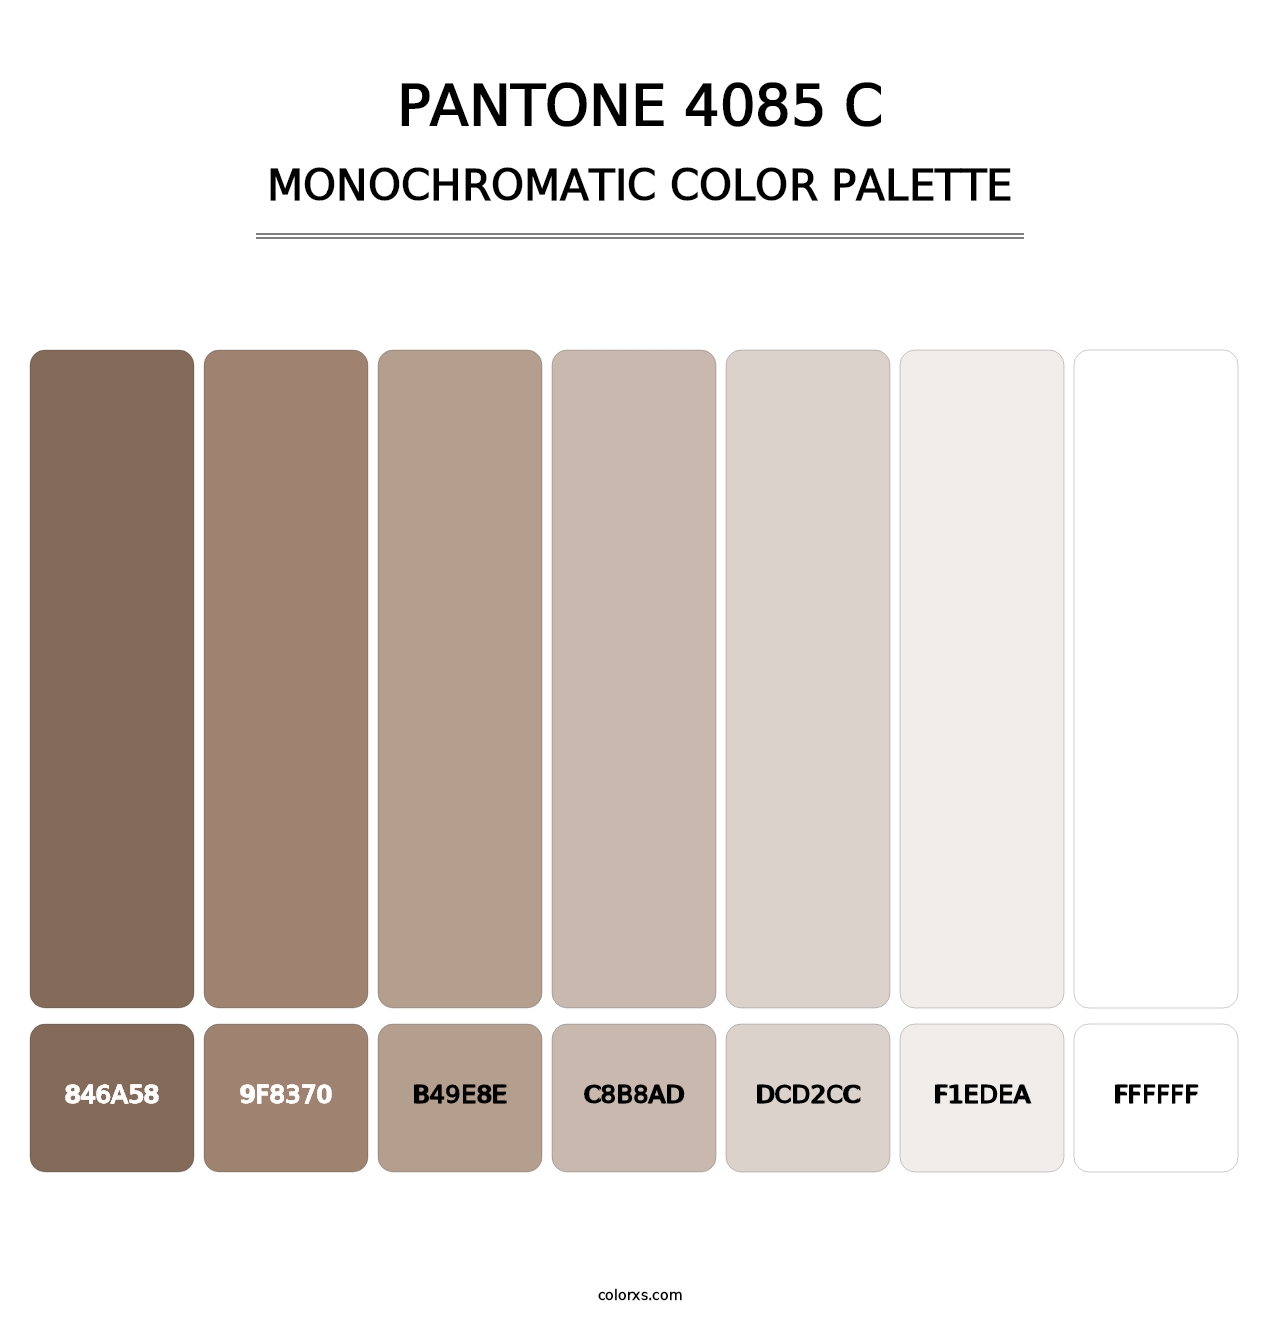 PANTONE 4085 C - Monochromatic Color Palette